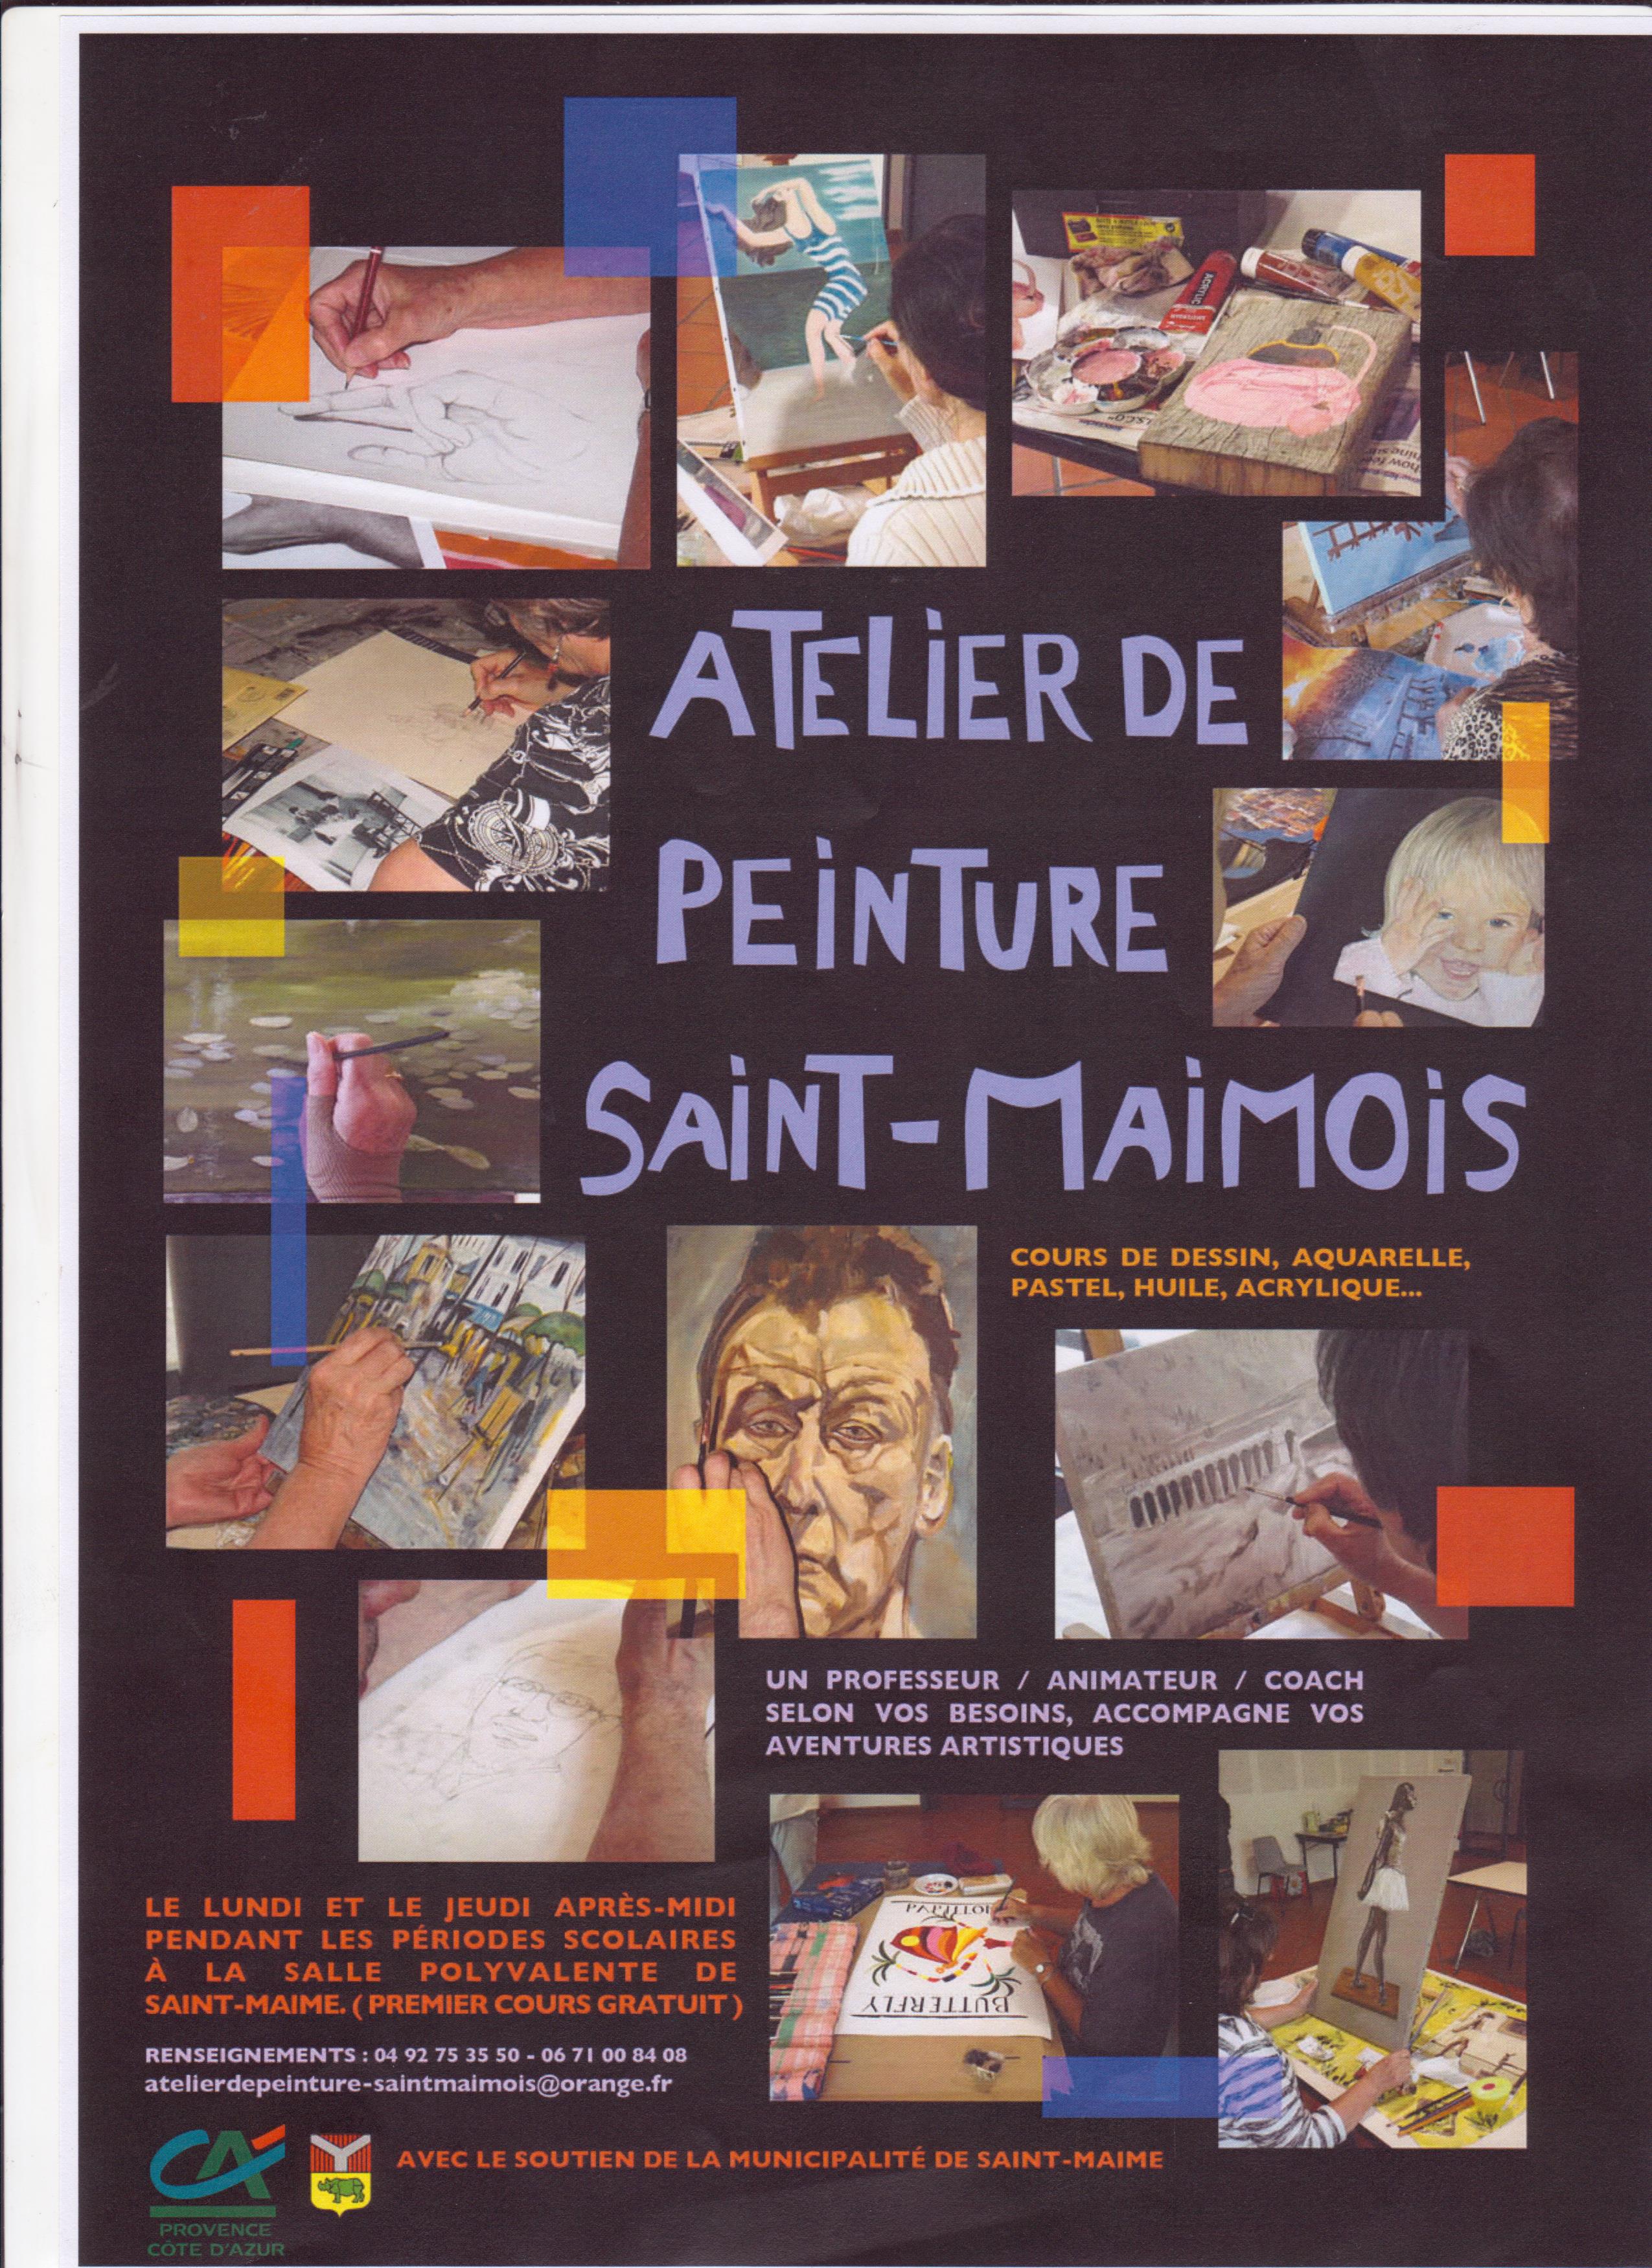 Ateliers de peinture et arts plastiques regroupent des habitants de Saint Maime